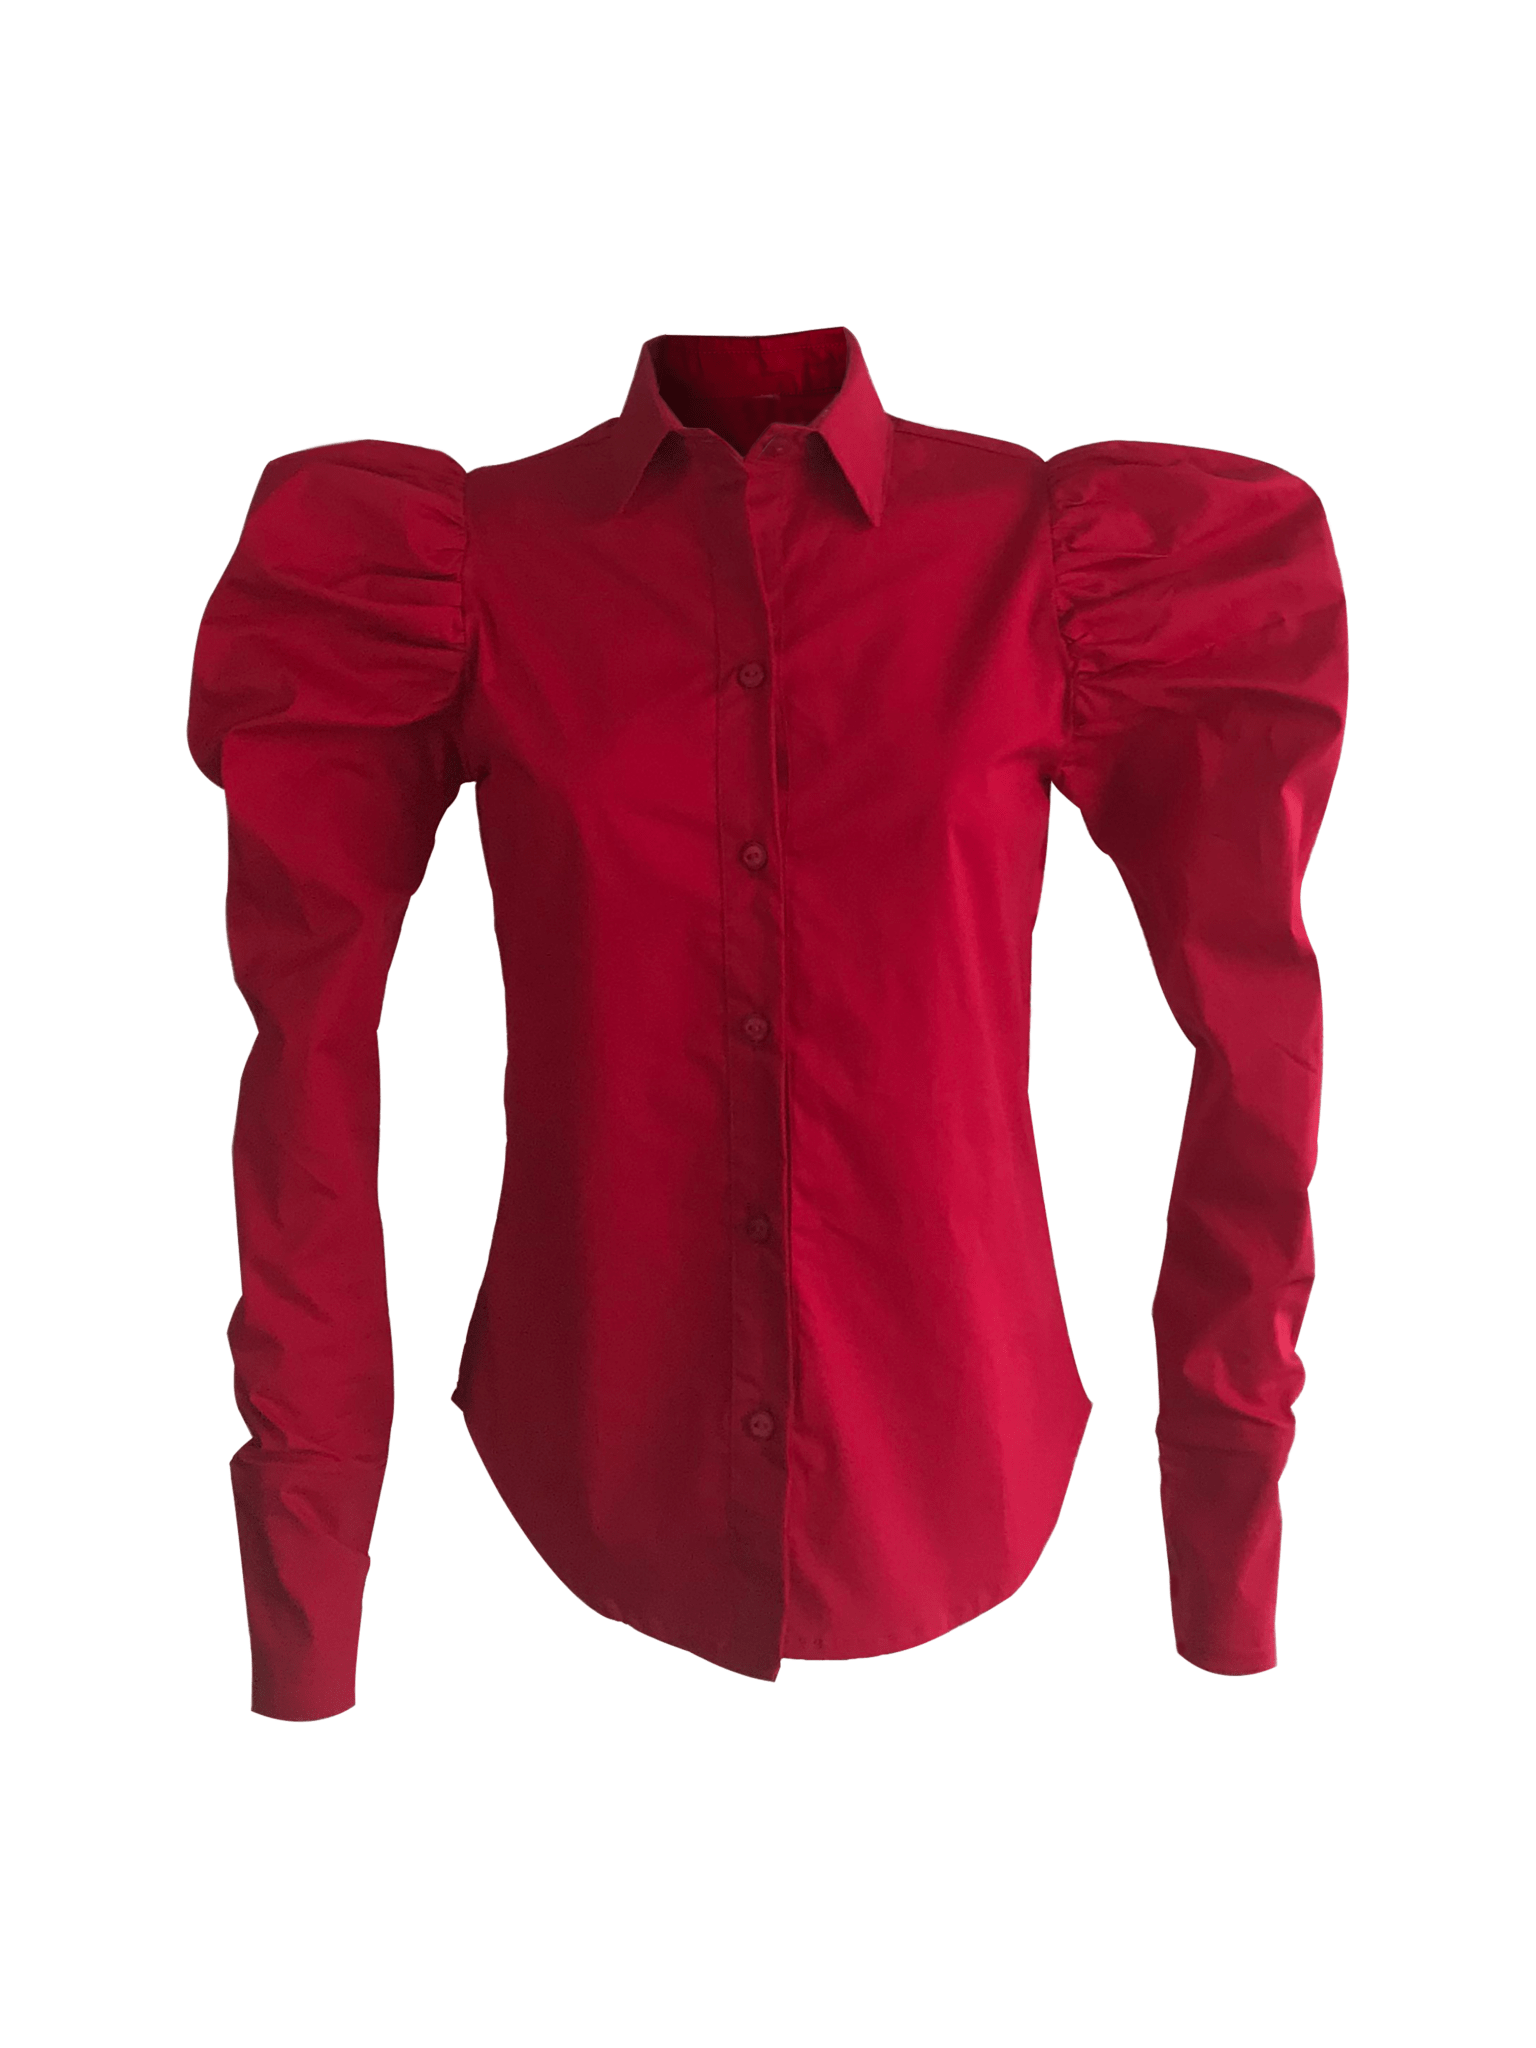 Camisa manga larga en color rojo.